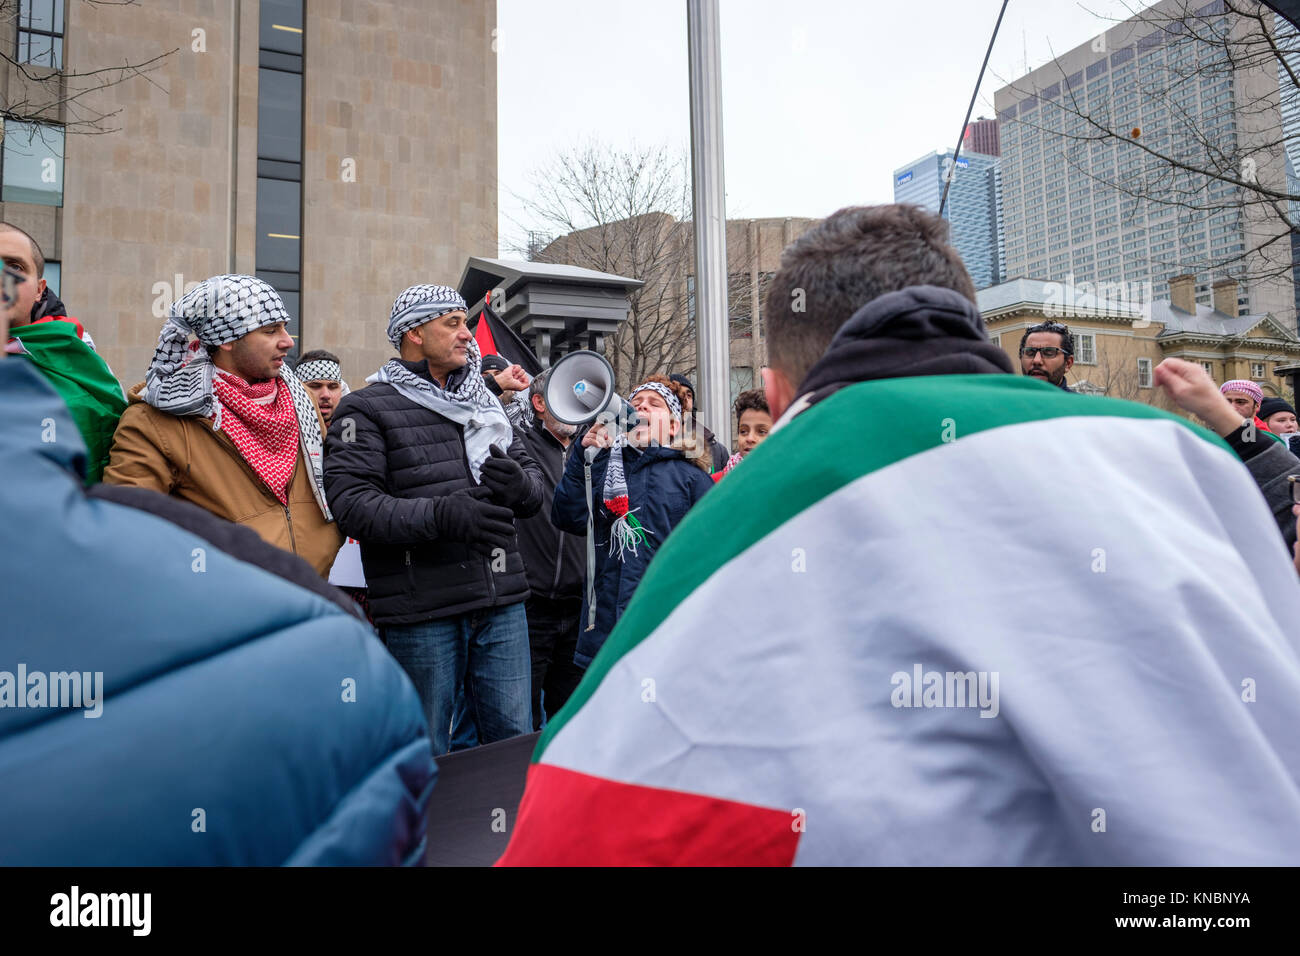 Des manifestants palestiniens se sont réunis à Toronto, Canada, pour protester contre le président Donald Trump décision reconnaissant Jérusalem comme capitale d'Israël. Banque D'Images